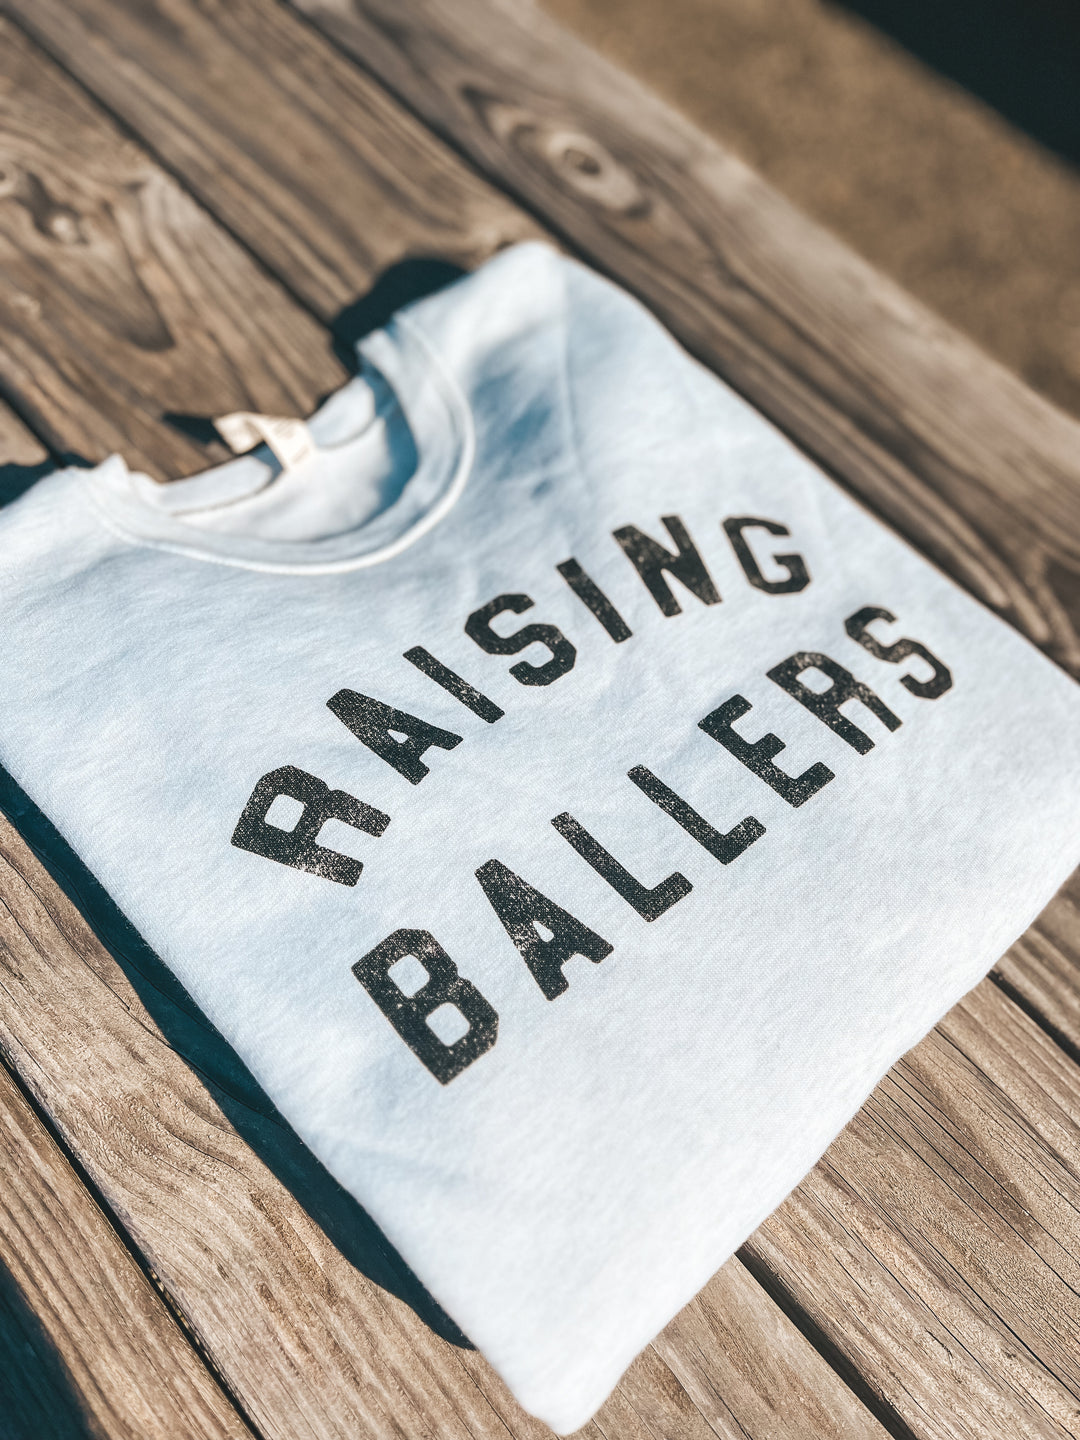 Raising Ballers Sweatshirt